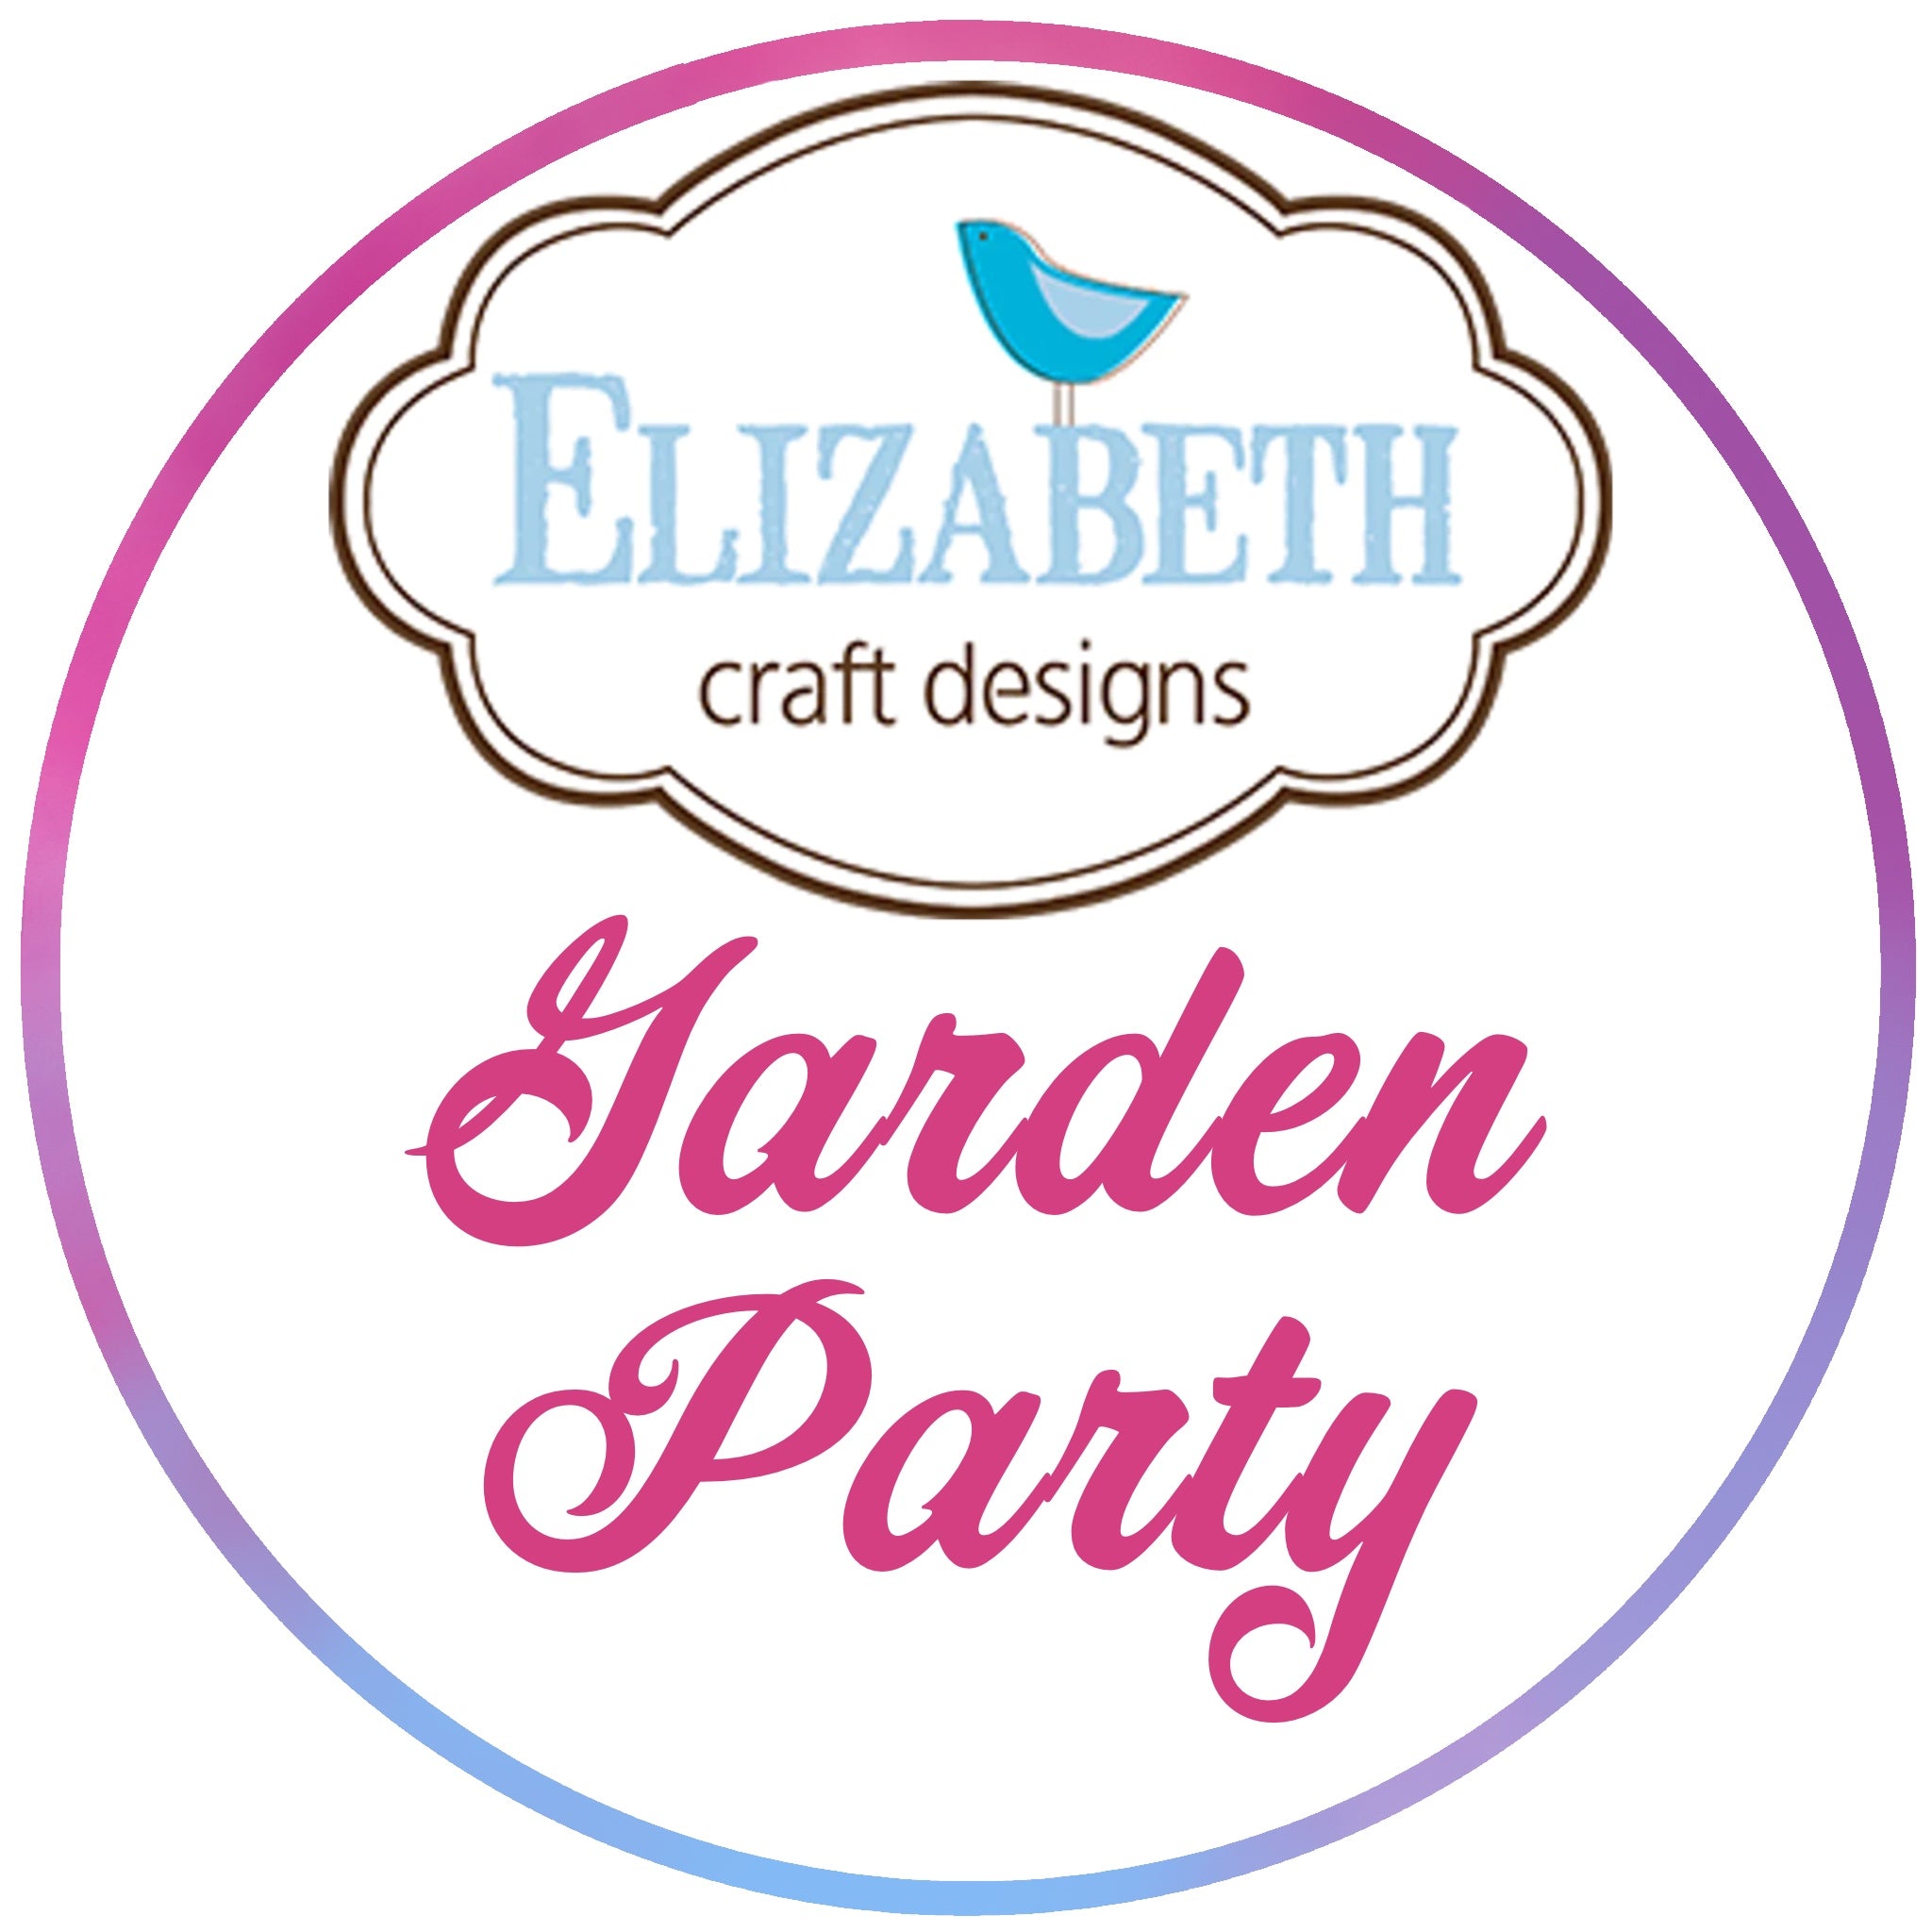 BUY IT ALL: Elizabeth Craft Designs Garden Party Collection